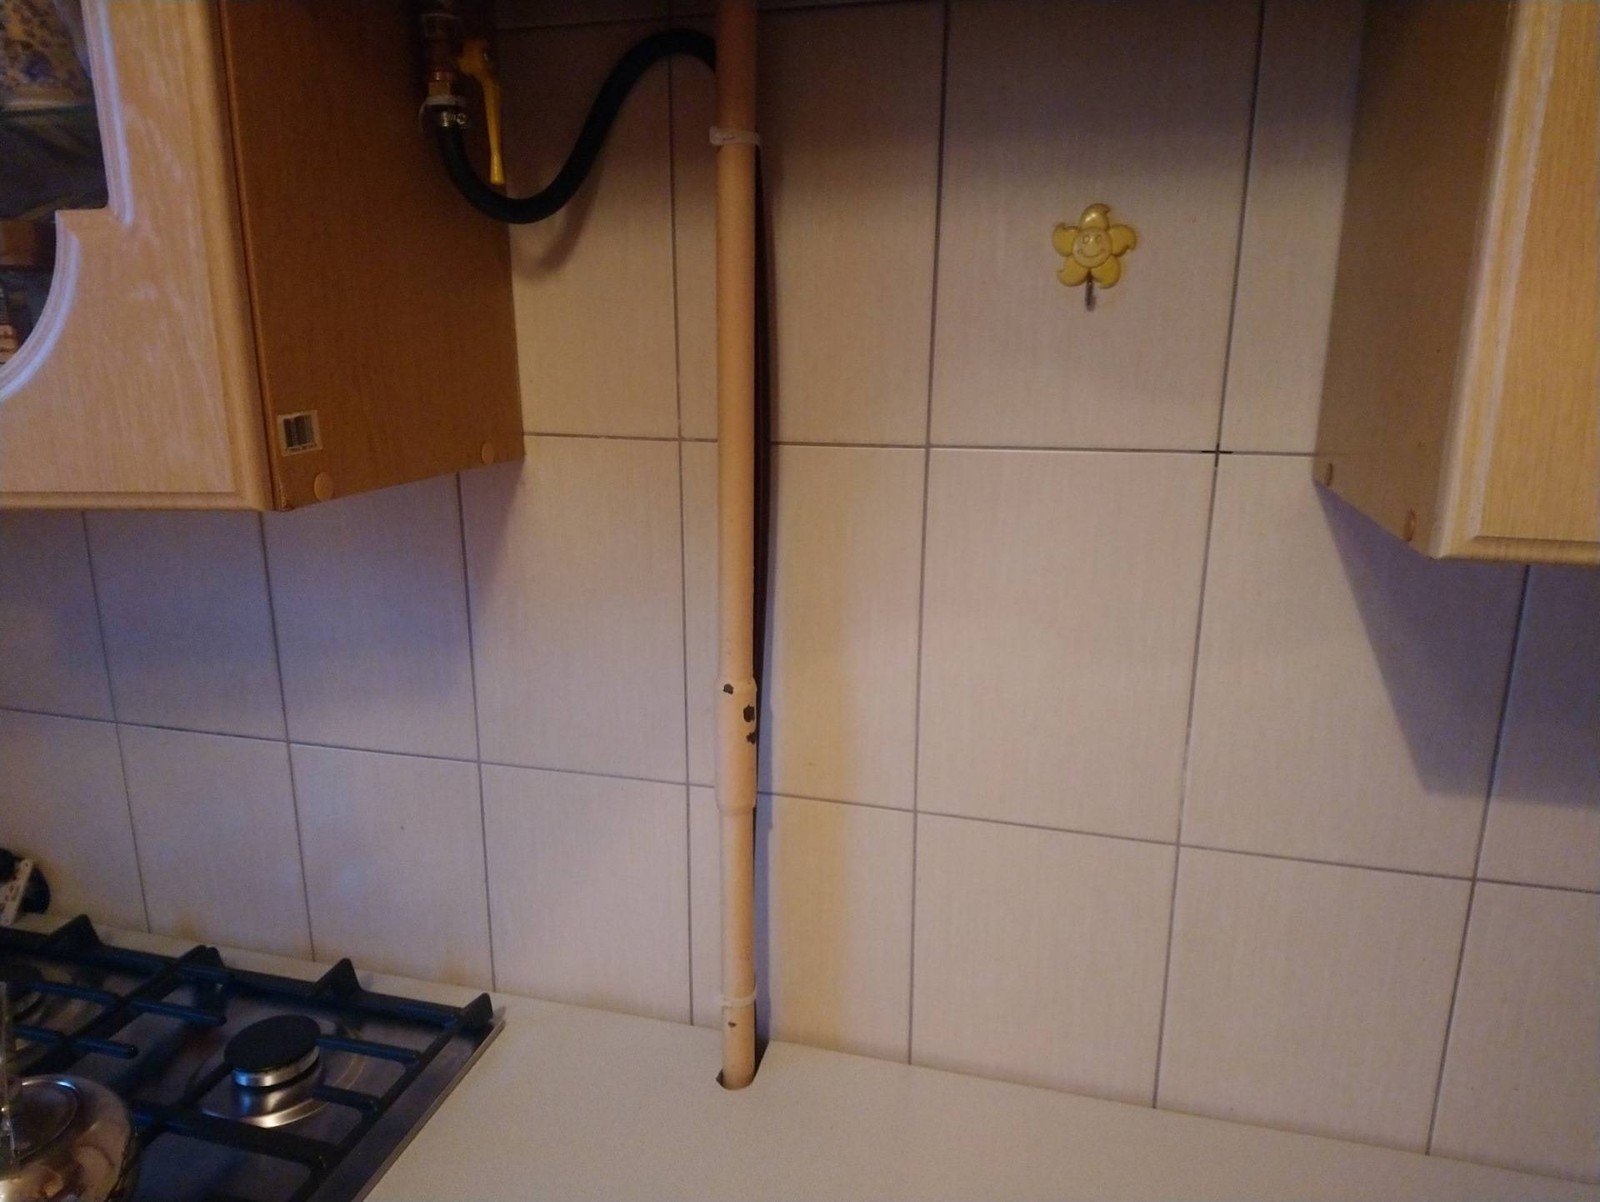 Спрятать газовую трубу на кухне